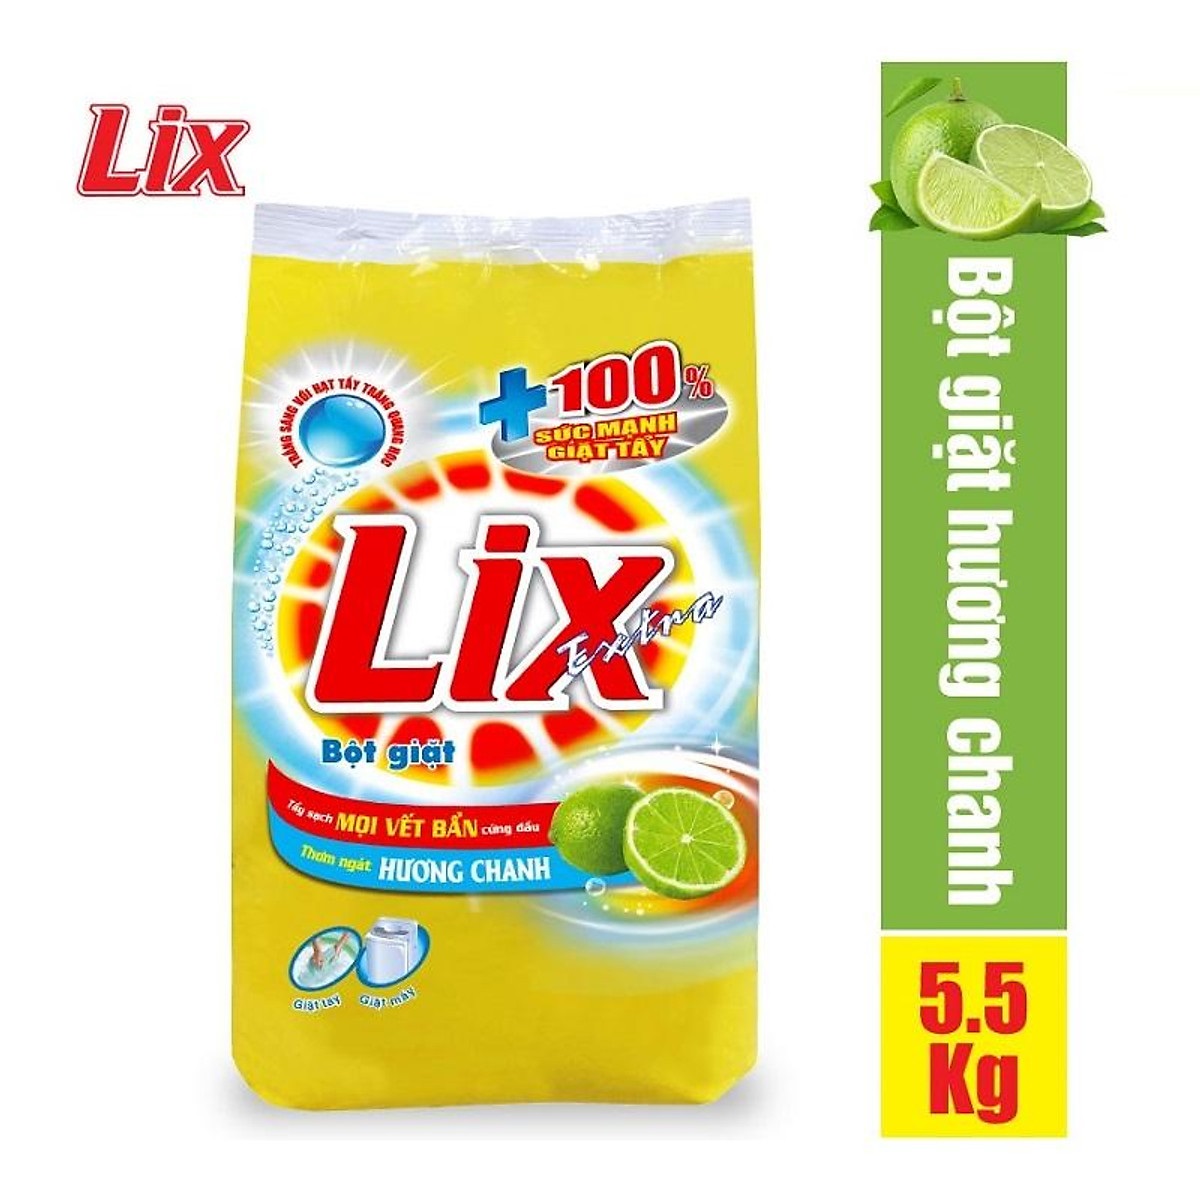 Bột giặt Lix Extra hương chanh 5.5Kg EC563 - Tẩy sạch vết bẩn cực mạnh